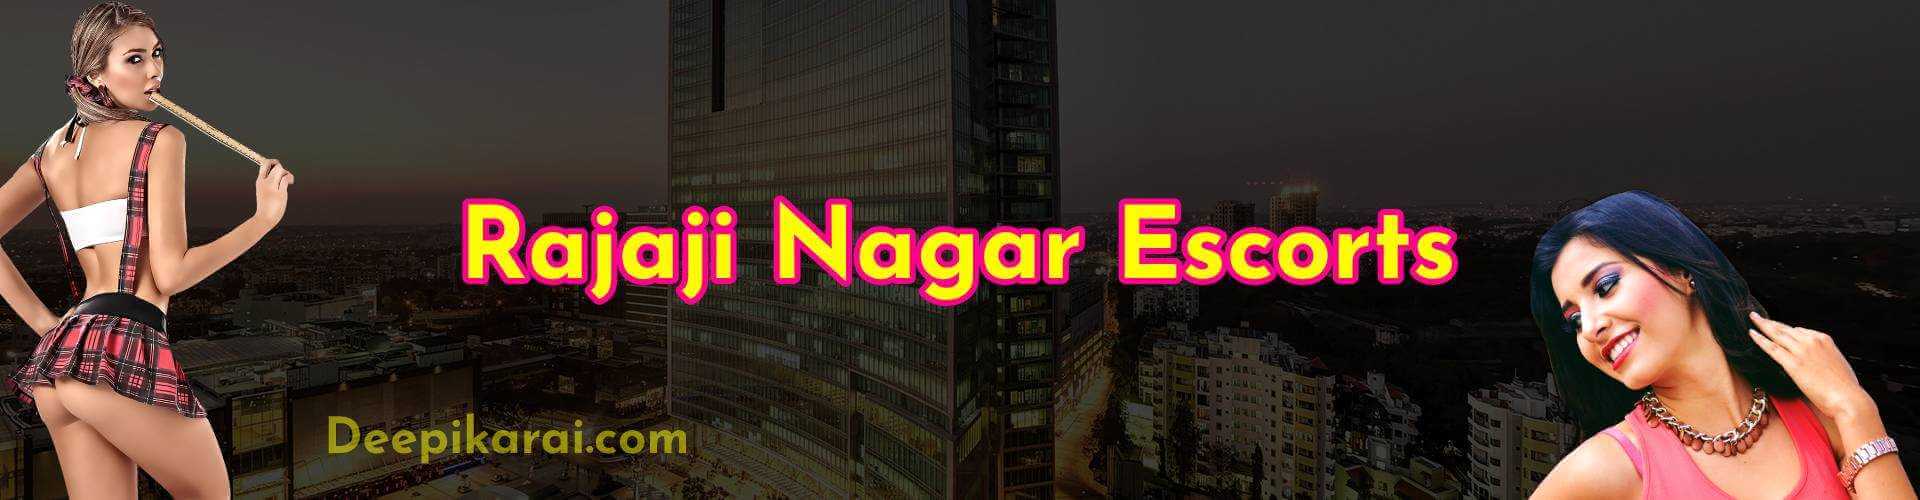 Rajaji Nagar escorts